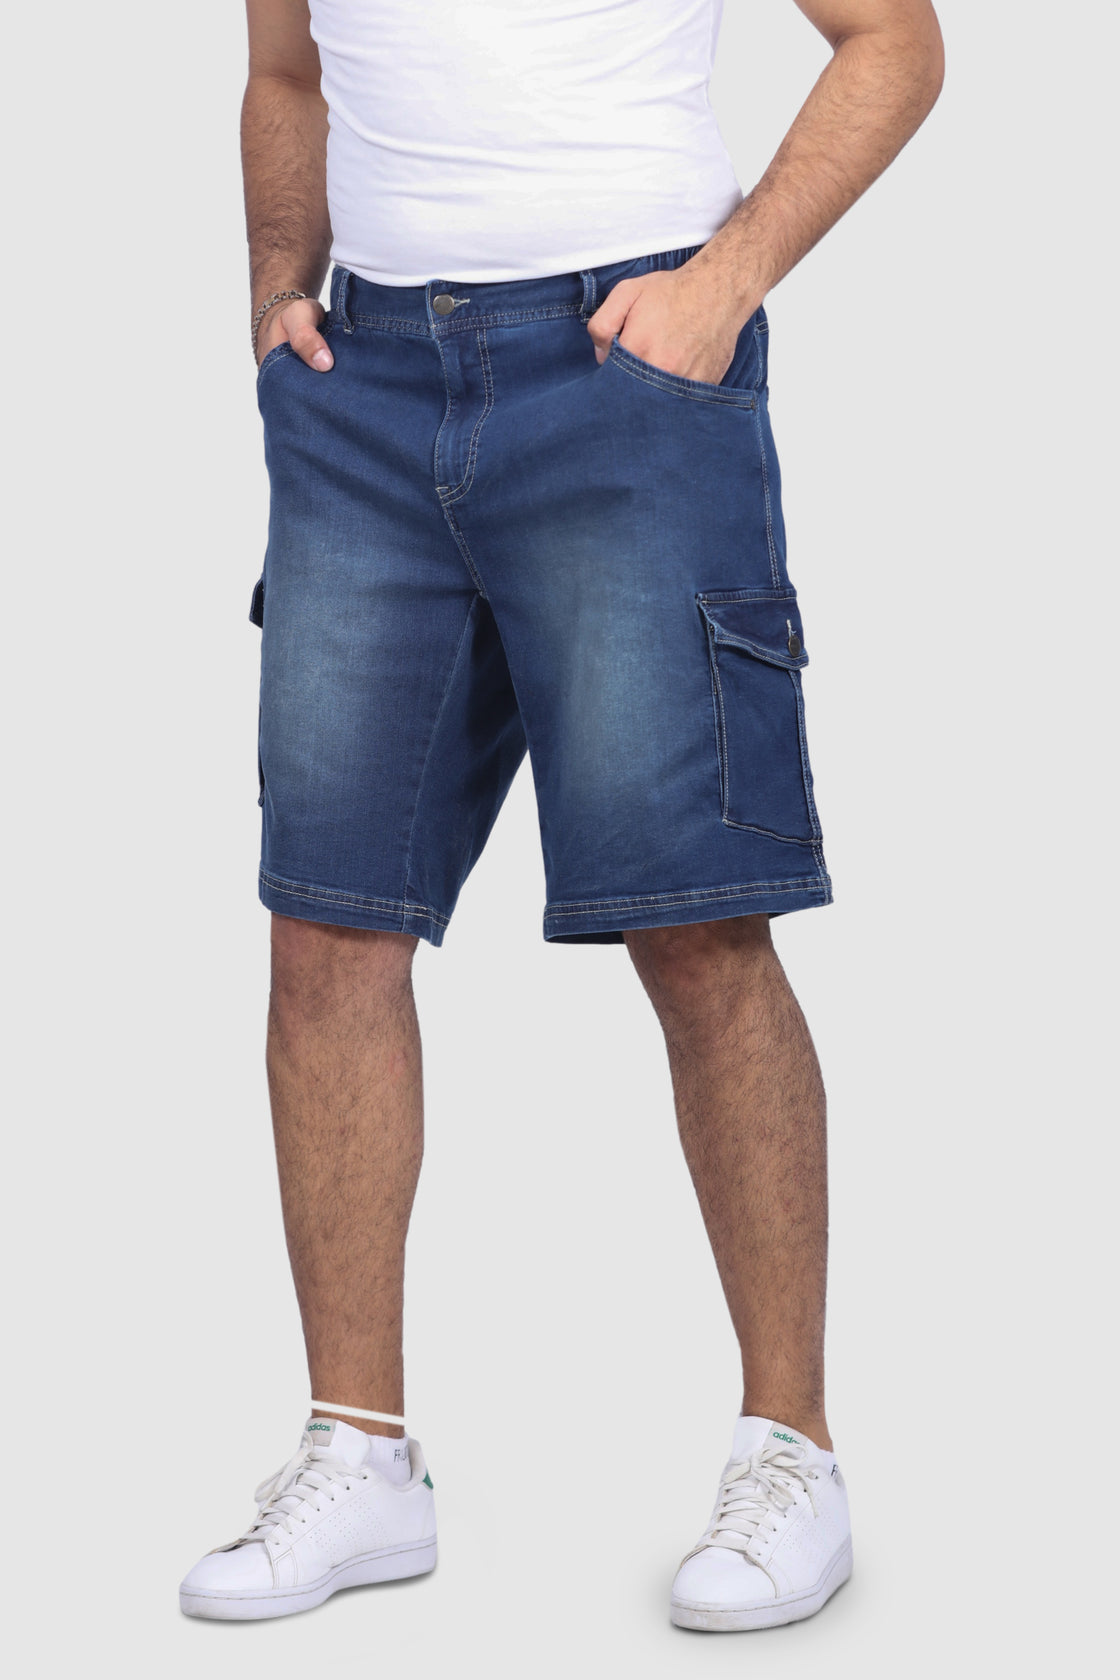 Denim Shorts With Belt | Eloquii